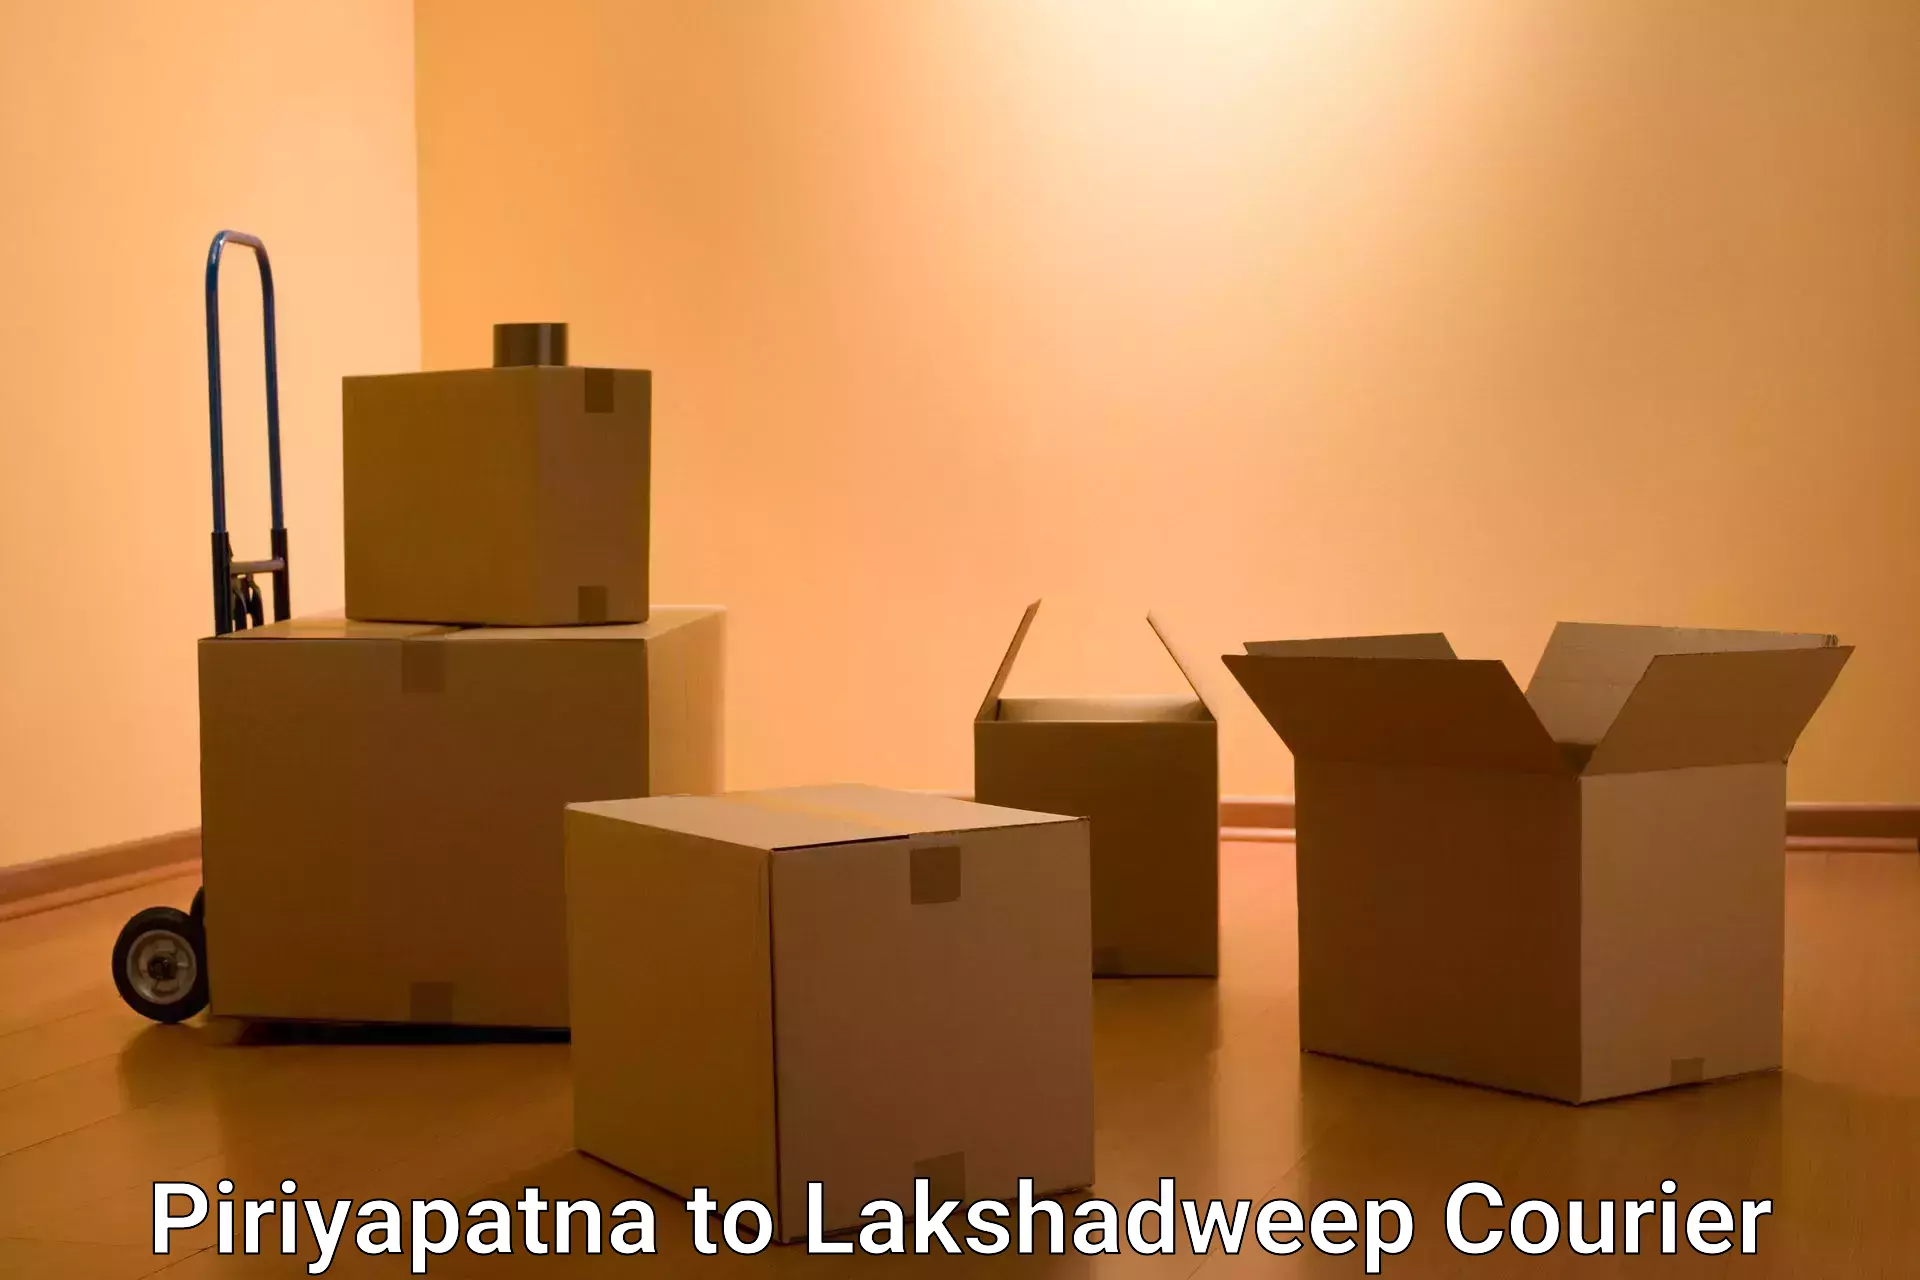 Integrated shipping solutions Piriyapatna to Lakshadweep